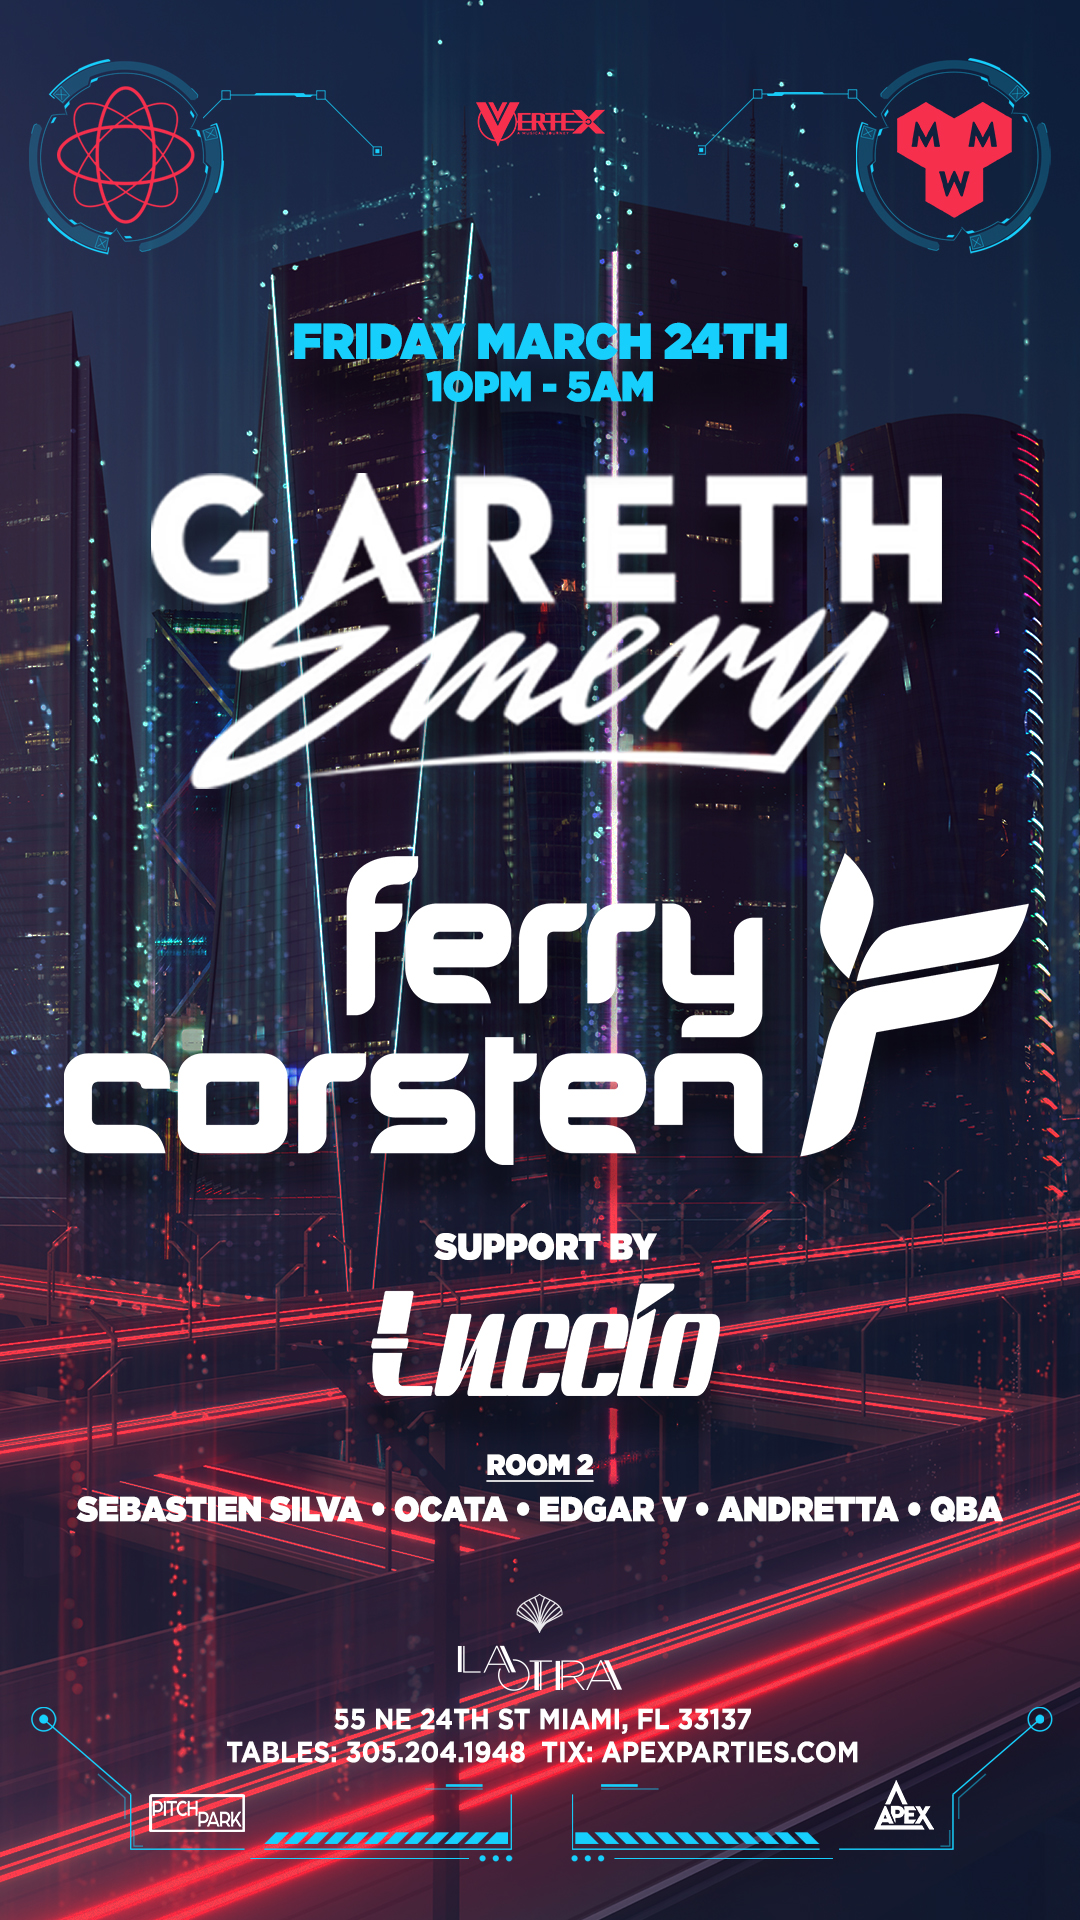 Gareth Emery & Ferry Corsten at Miami Music Week - フライヤー裏